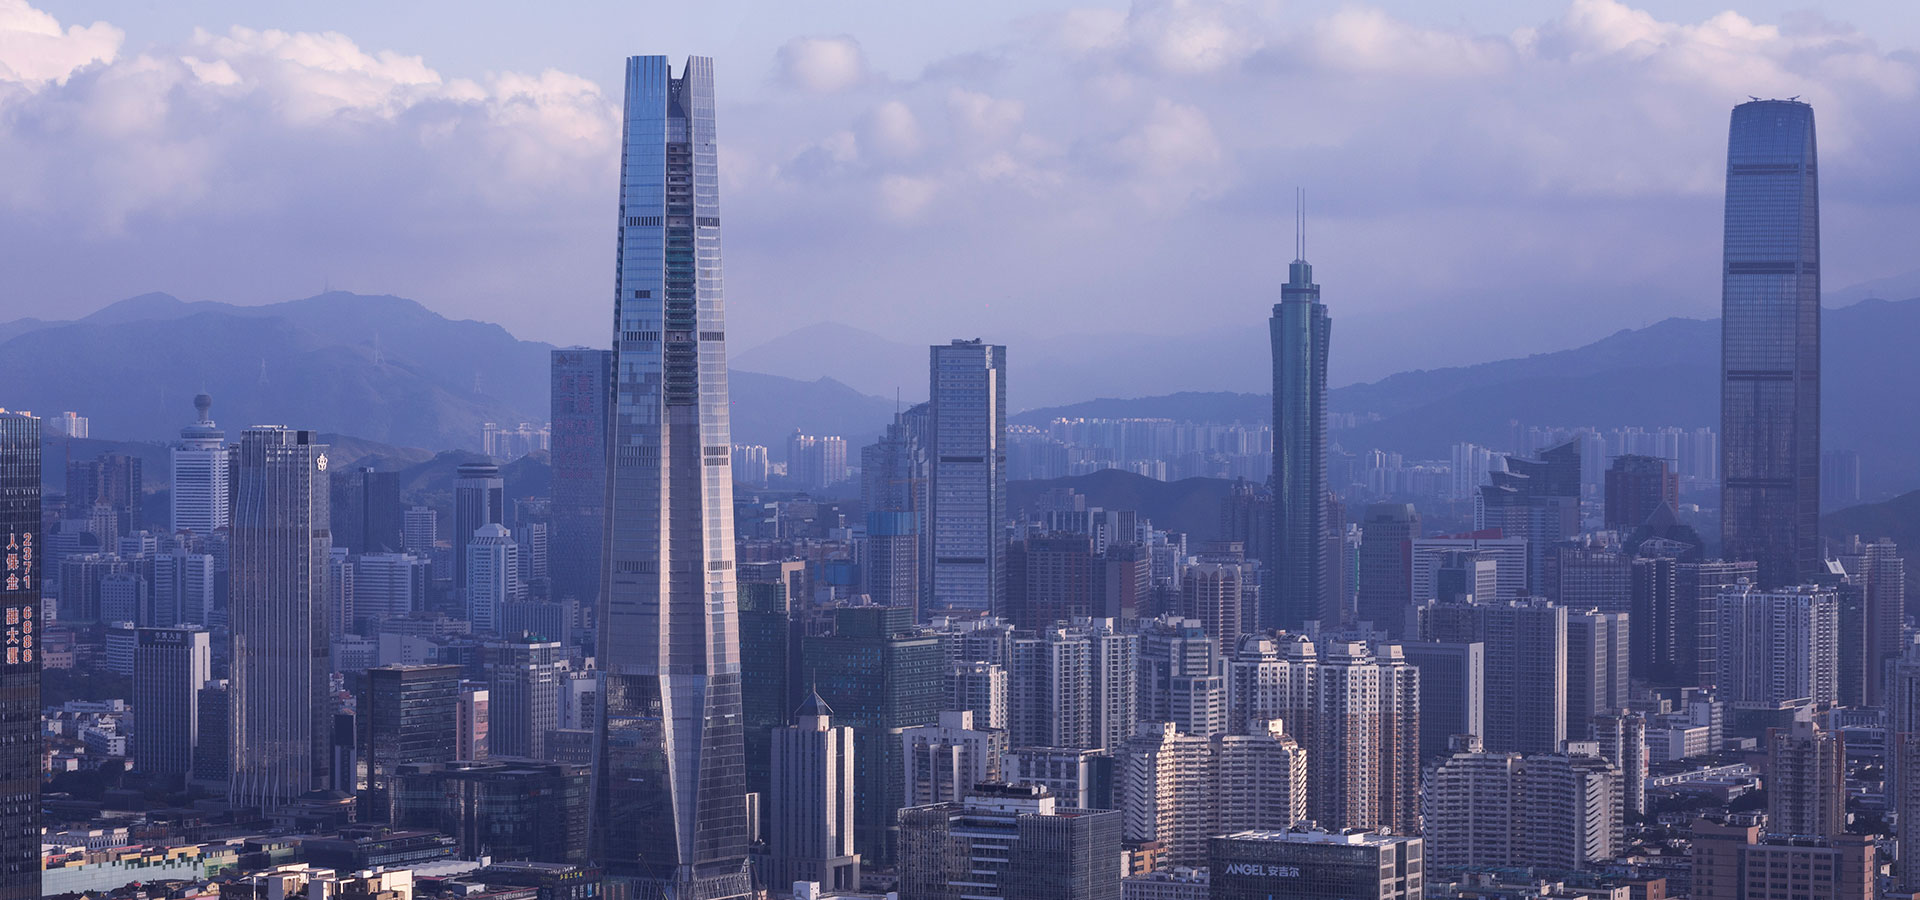 Citymark Centre, Shenzhen, the tallest building of 2022